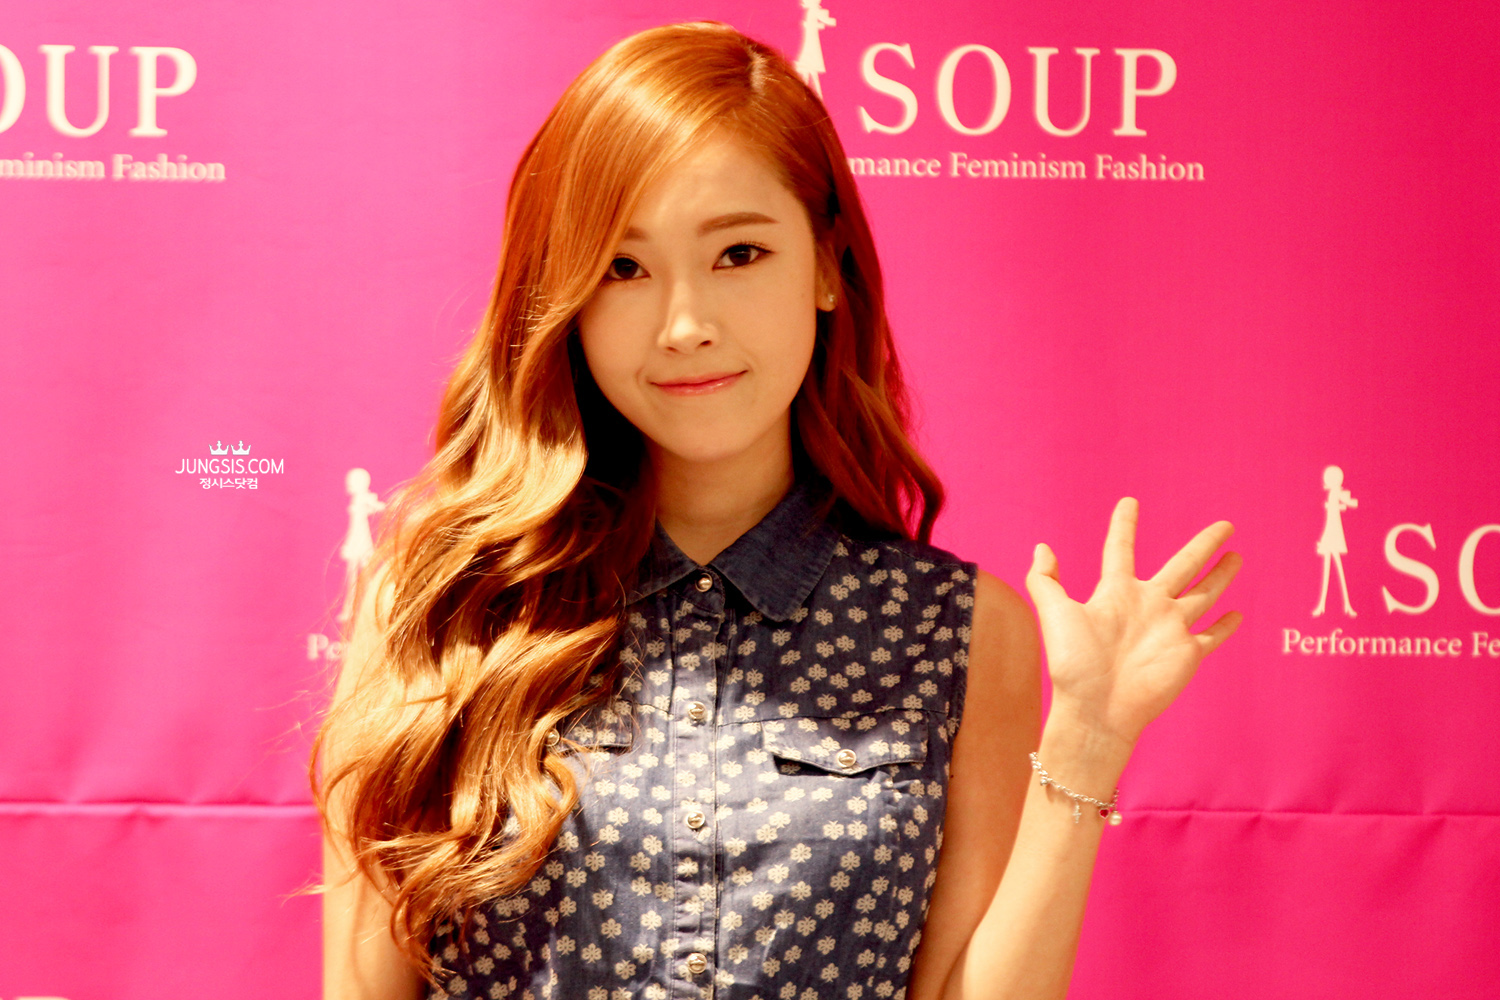 [PIC][04-04-2014]Jessica tham dự buổi fansign cho thương hiệu "SOUP" vào trưa nay - Page 3 266BBE4253A44A7608DB60